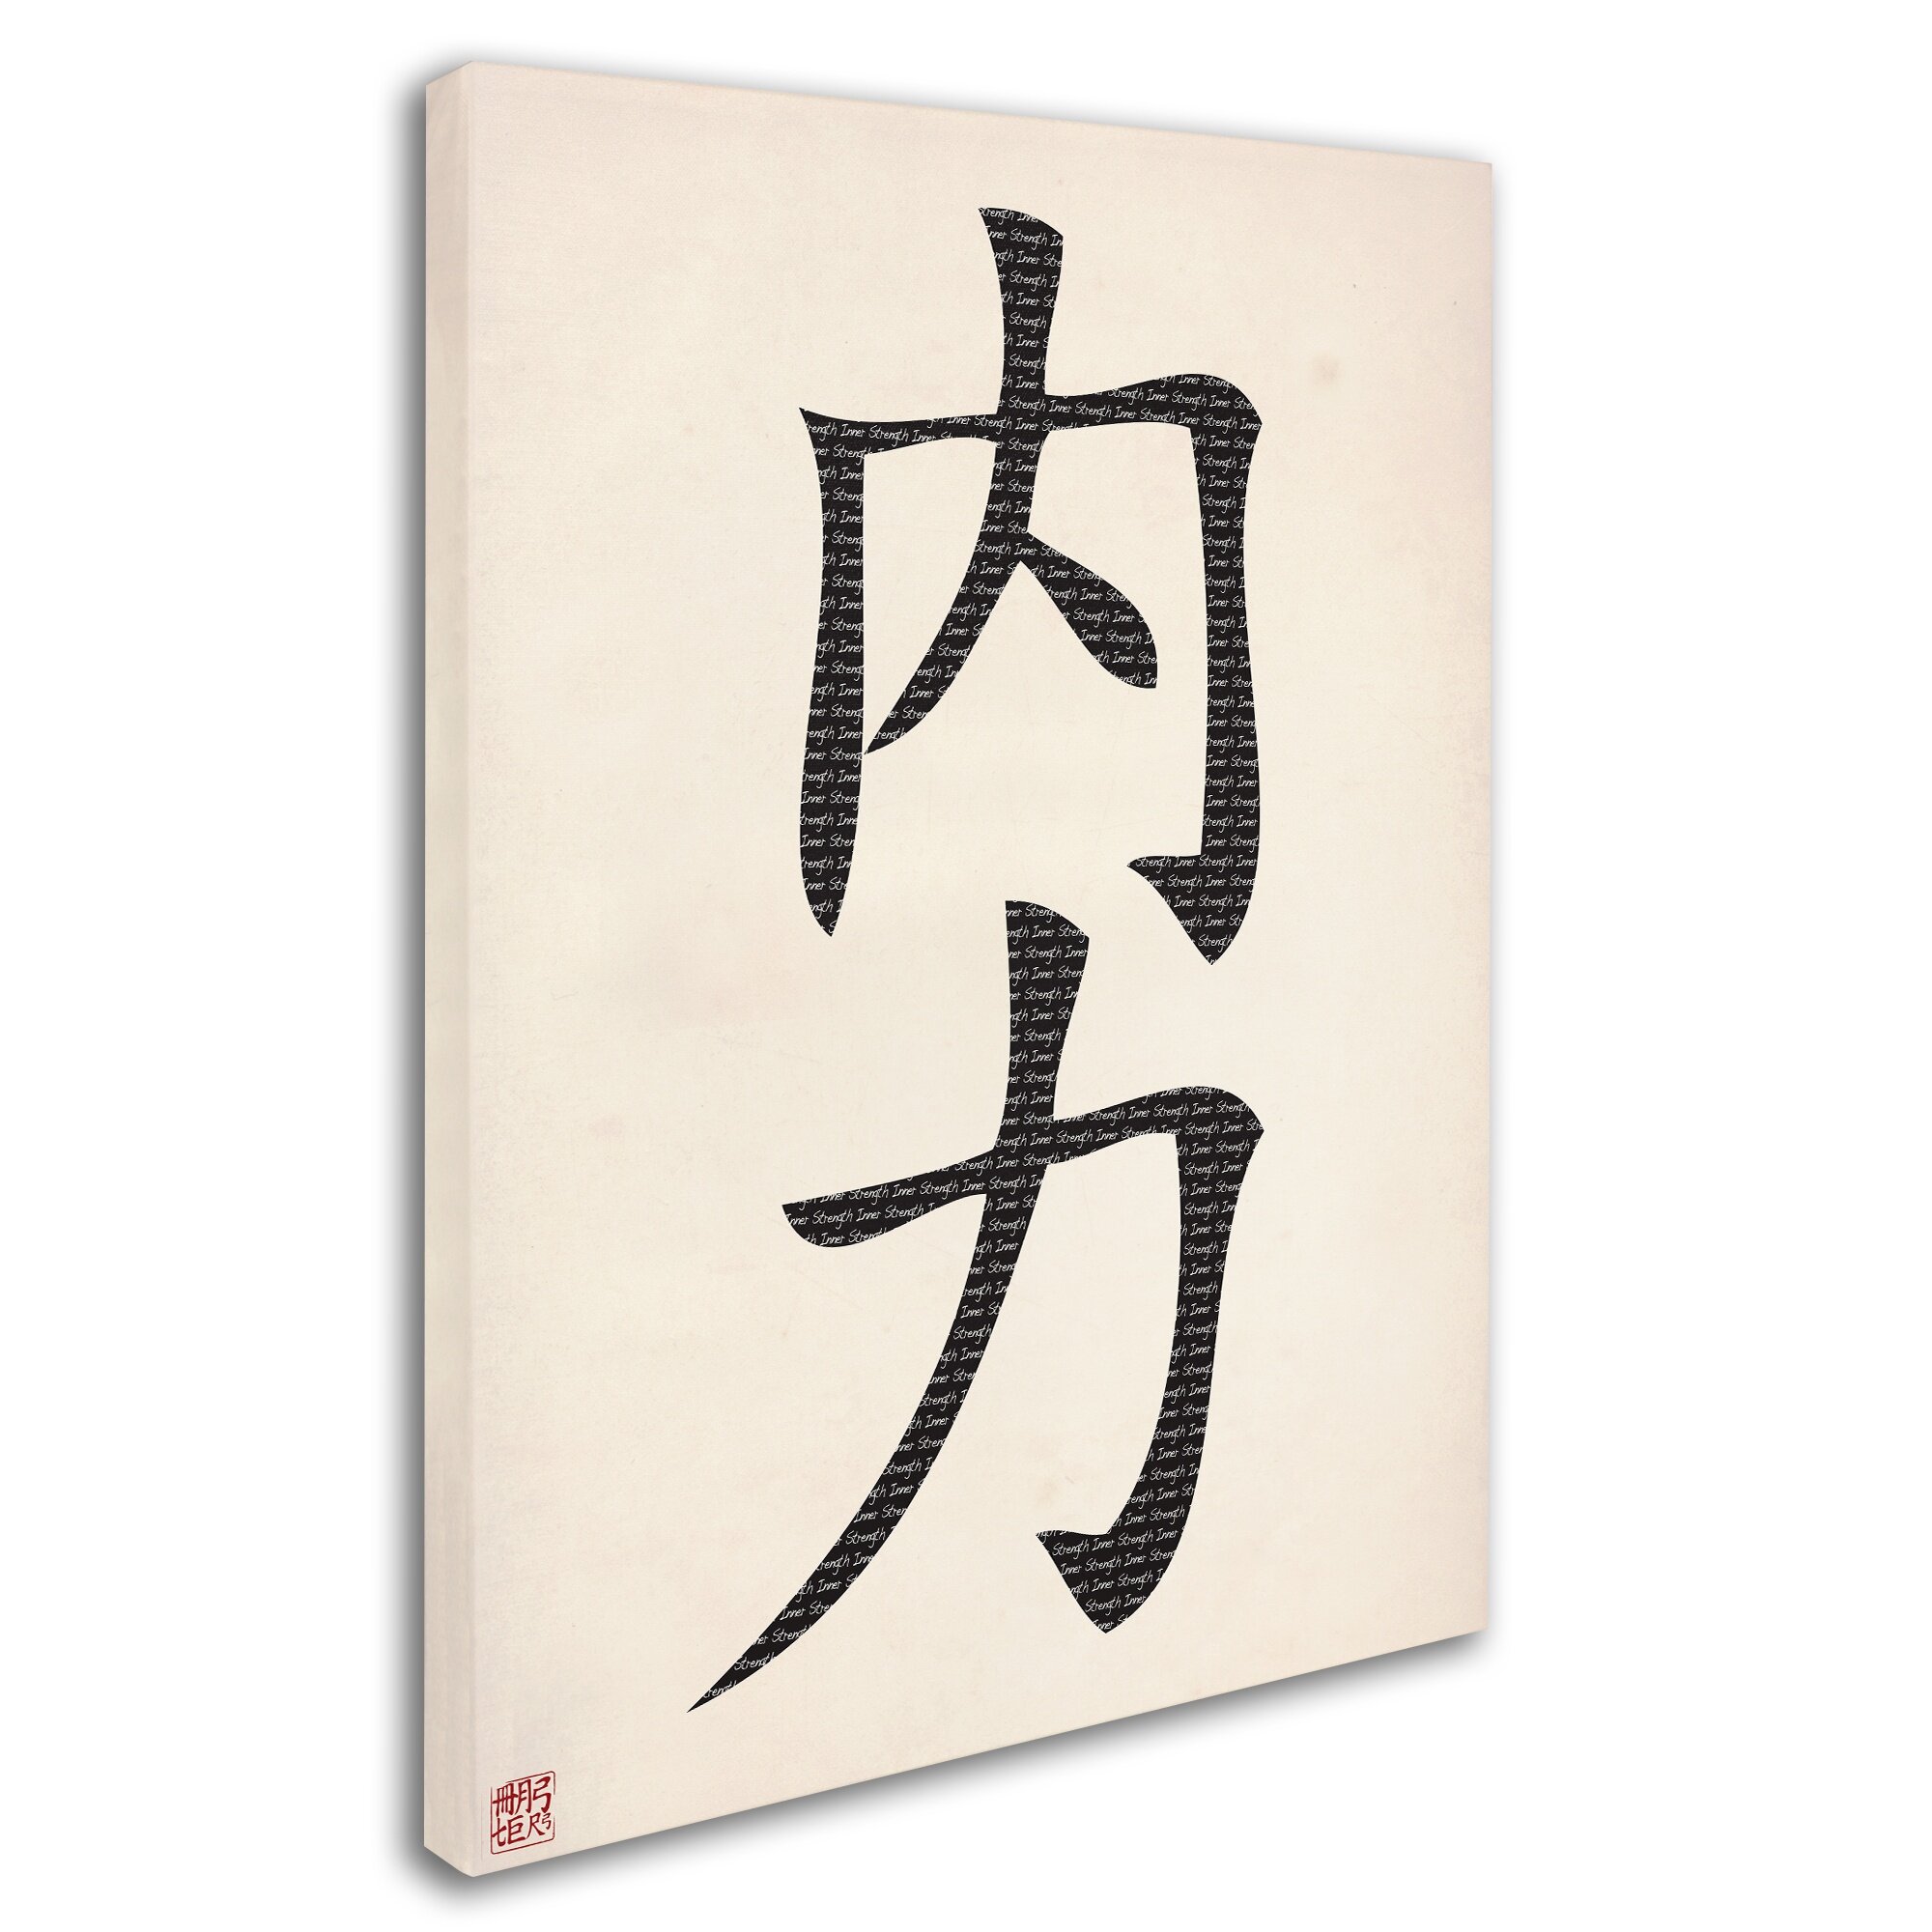 japanese symbol for inner strength